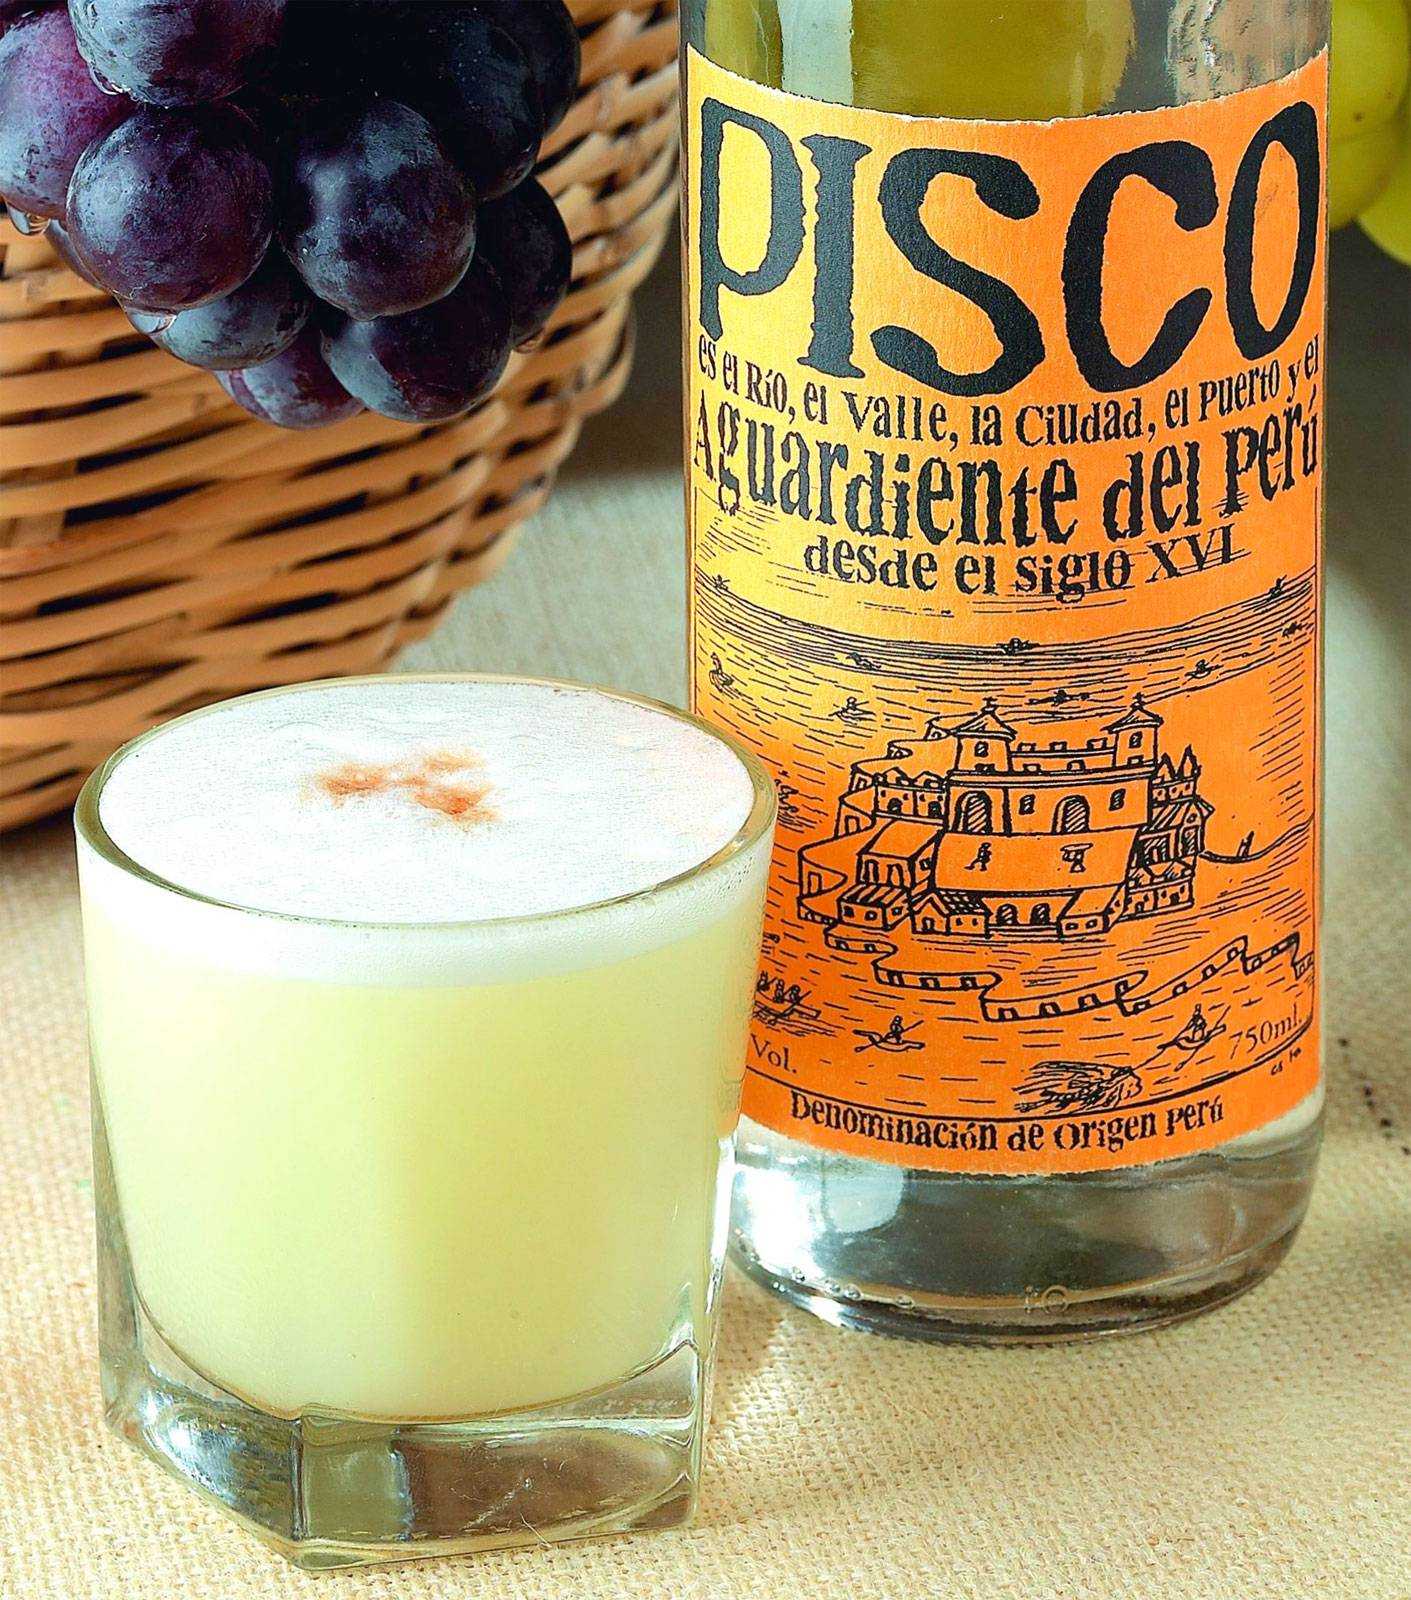 Алкогольный напиток pisco - "виноградный самогон" из чили и перу - история писко, гастрономические сочетания